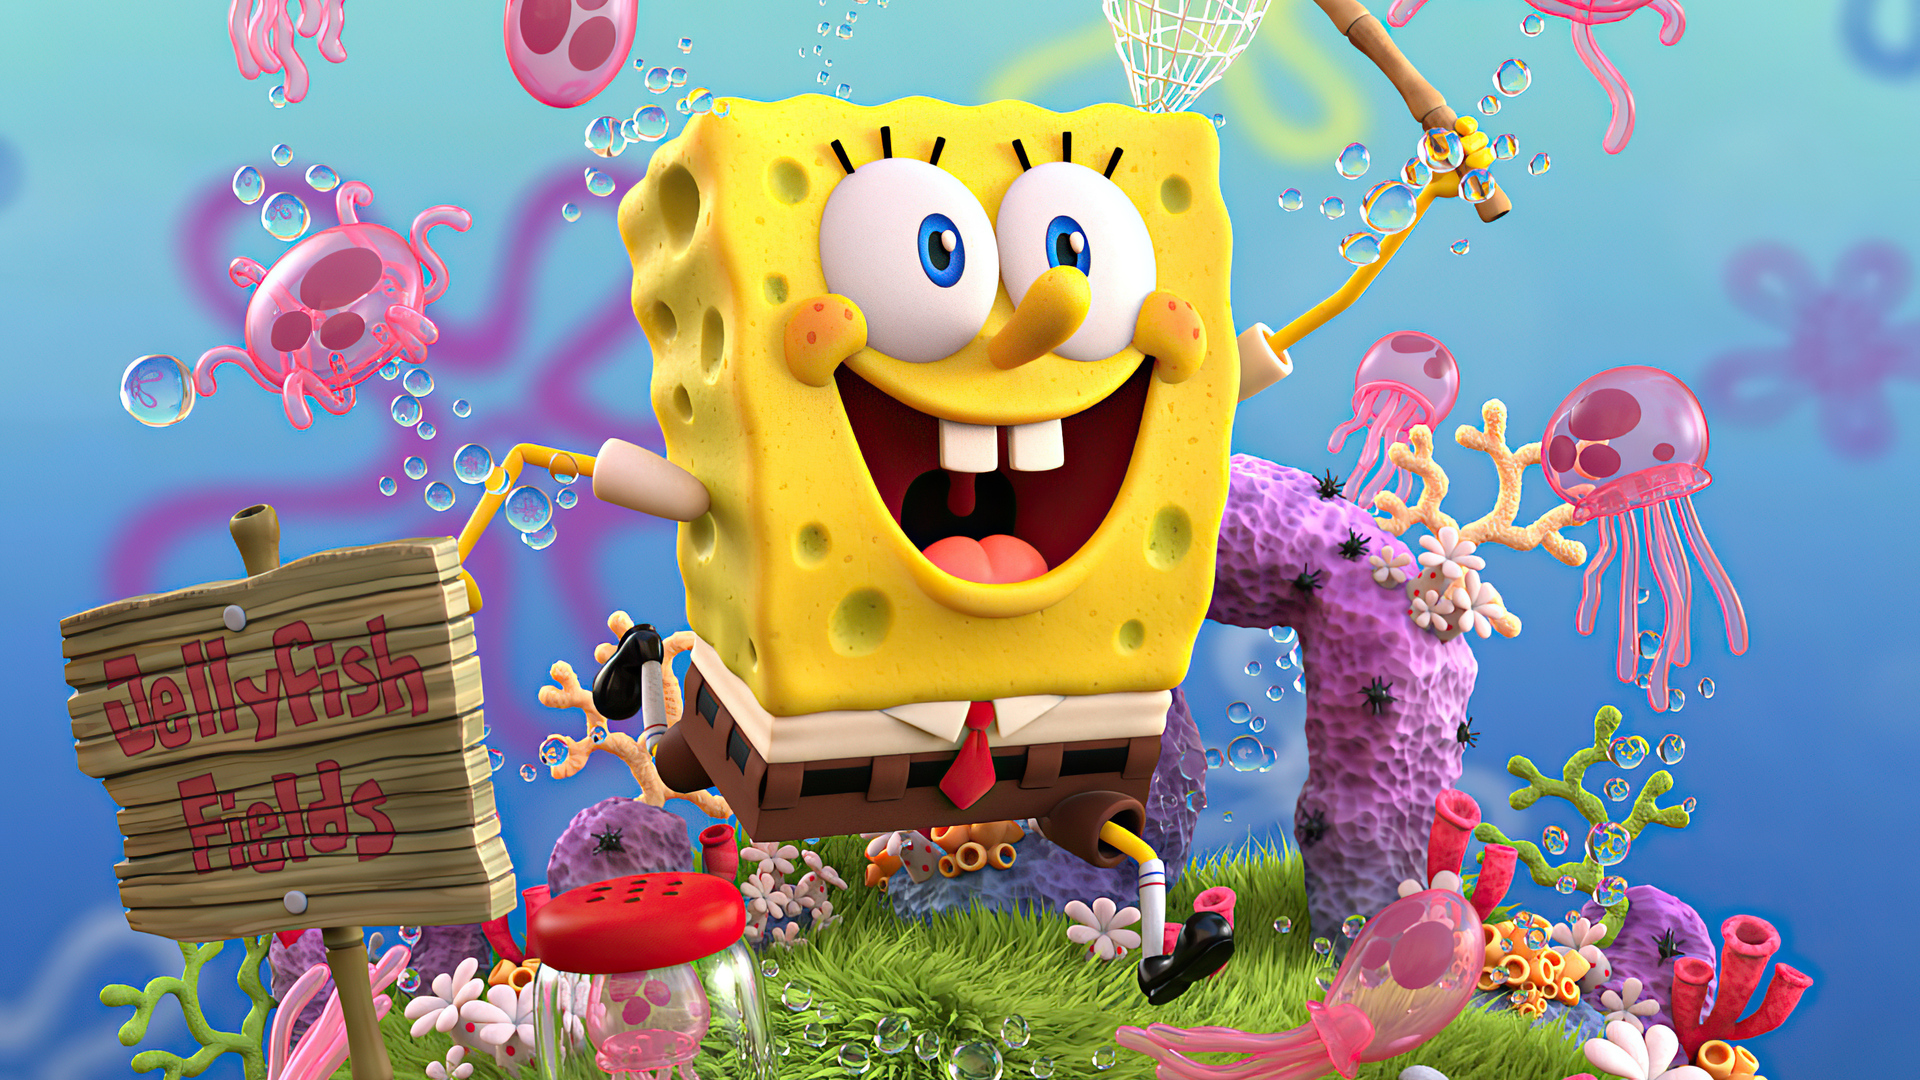 Với độ phân giải cao lên tới 4K, những hình nền của nhân vật Spongebob Squarepants này sẽ đưa bạn đến với những góc nhìn chưa từng thấy trước đó. Tận hưởng sự sống động và tinh tế của các đường nét trên hình ảnh để thức tỉnh trí tưởng tượng của bạn.